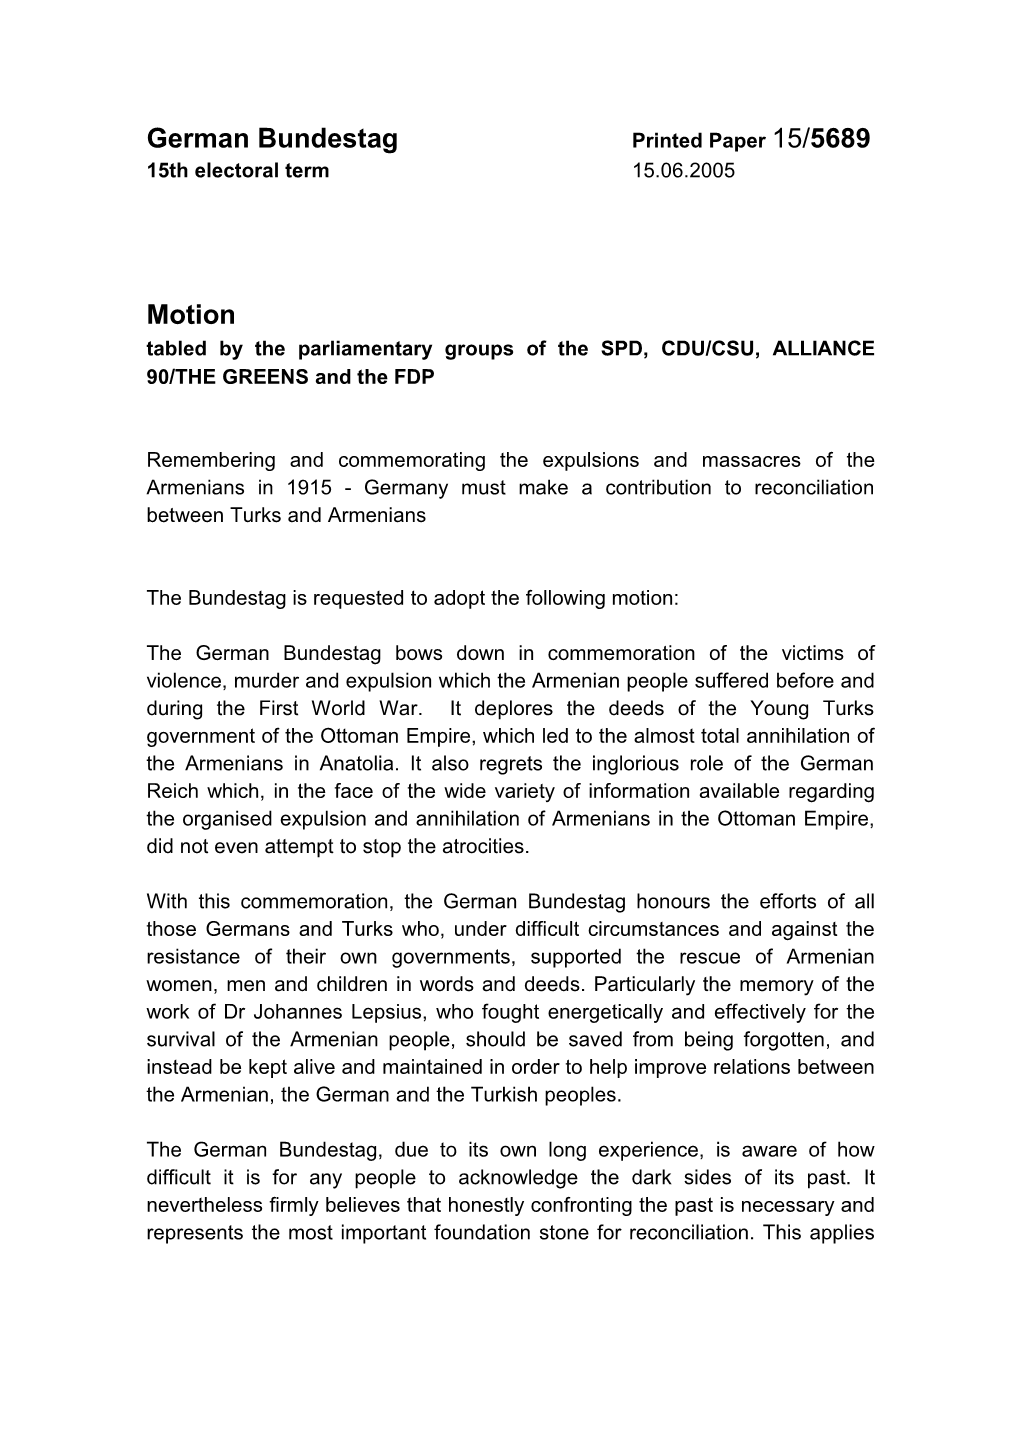 German Bundestag Printed Paper 15/5689 15Th Electoral Term 15.06.2005